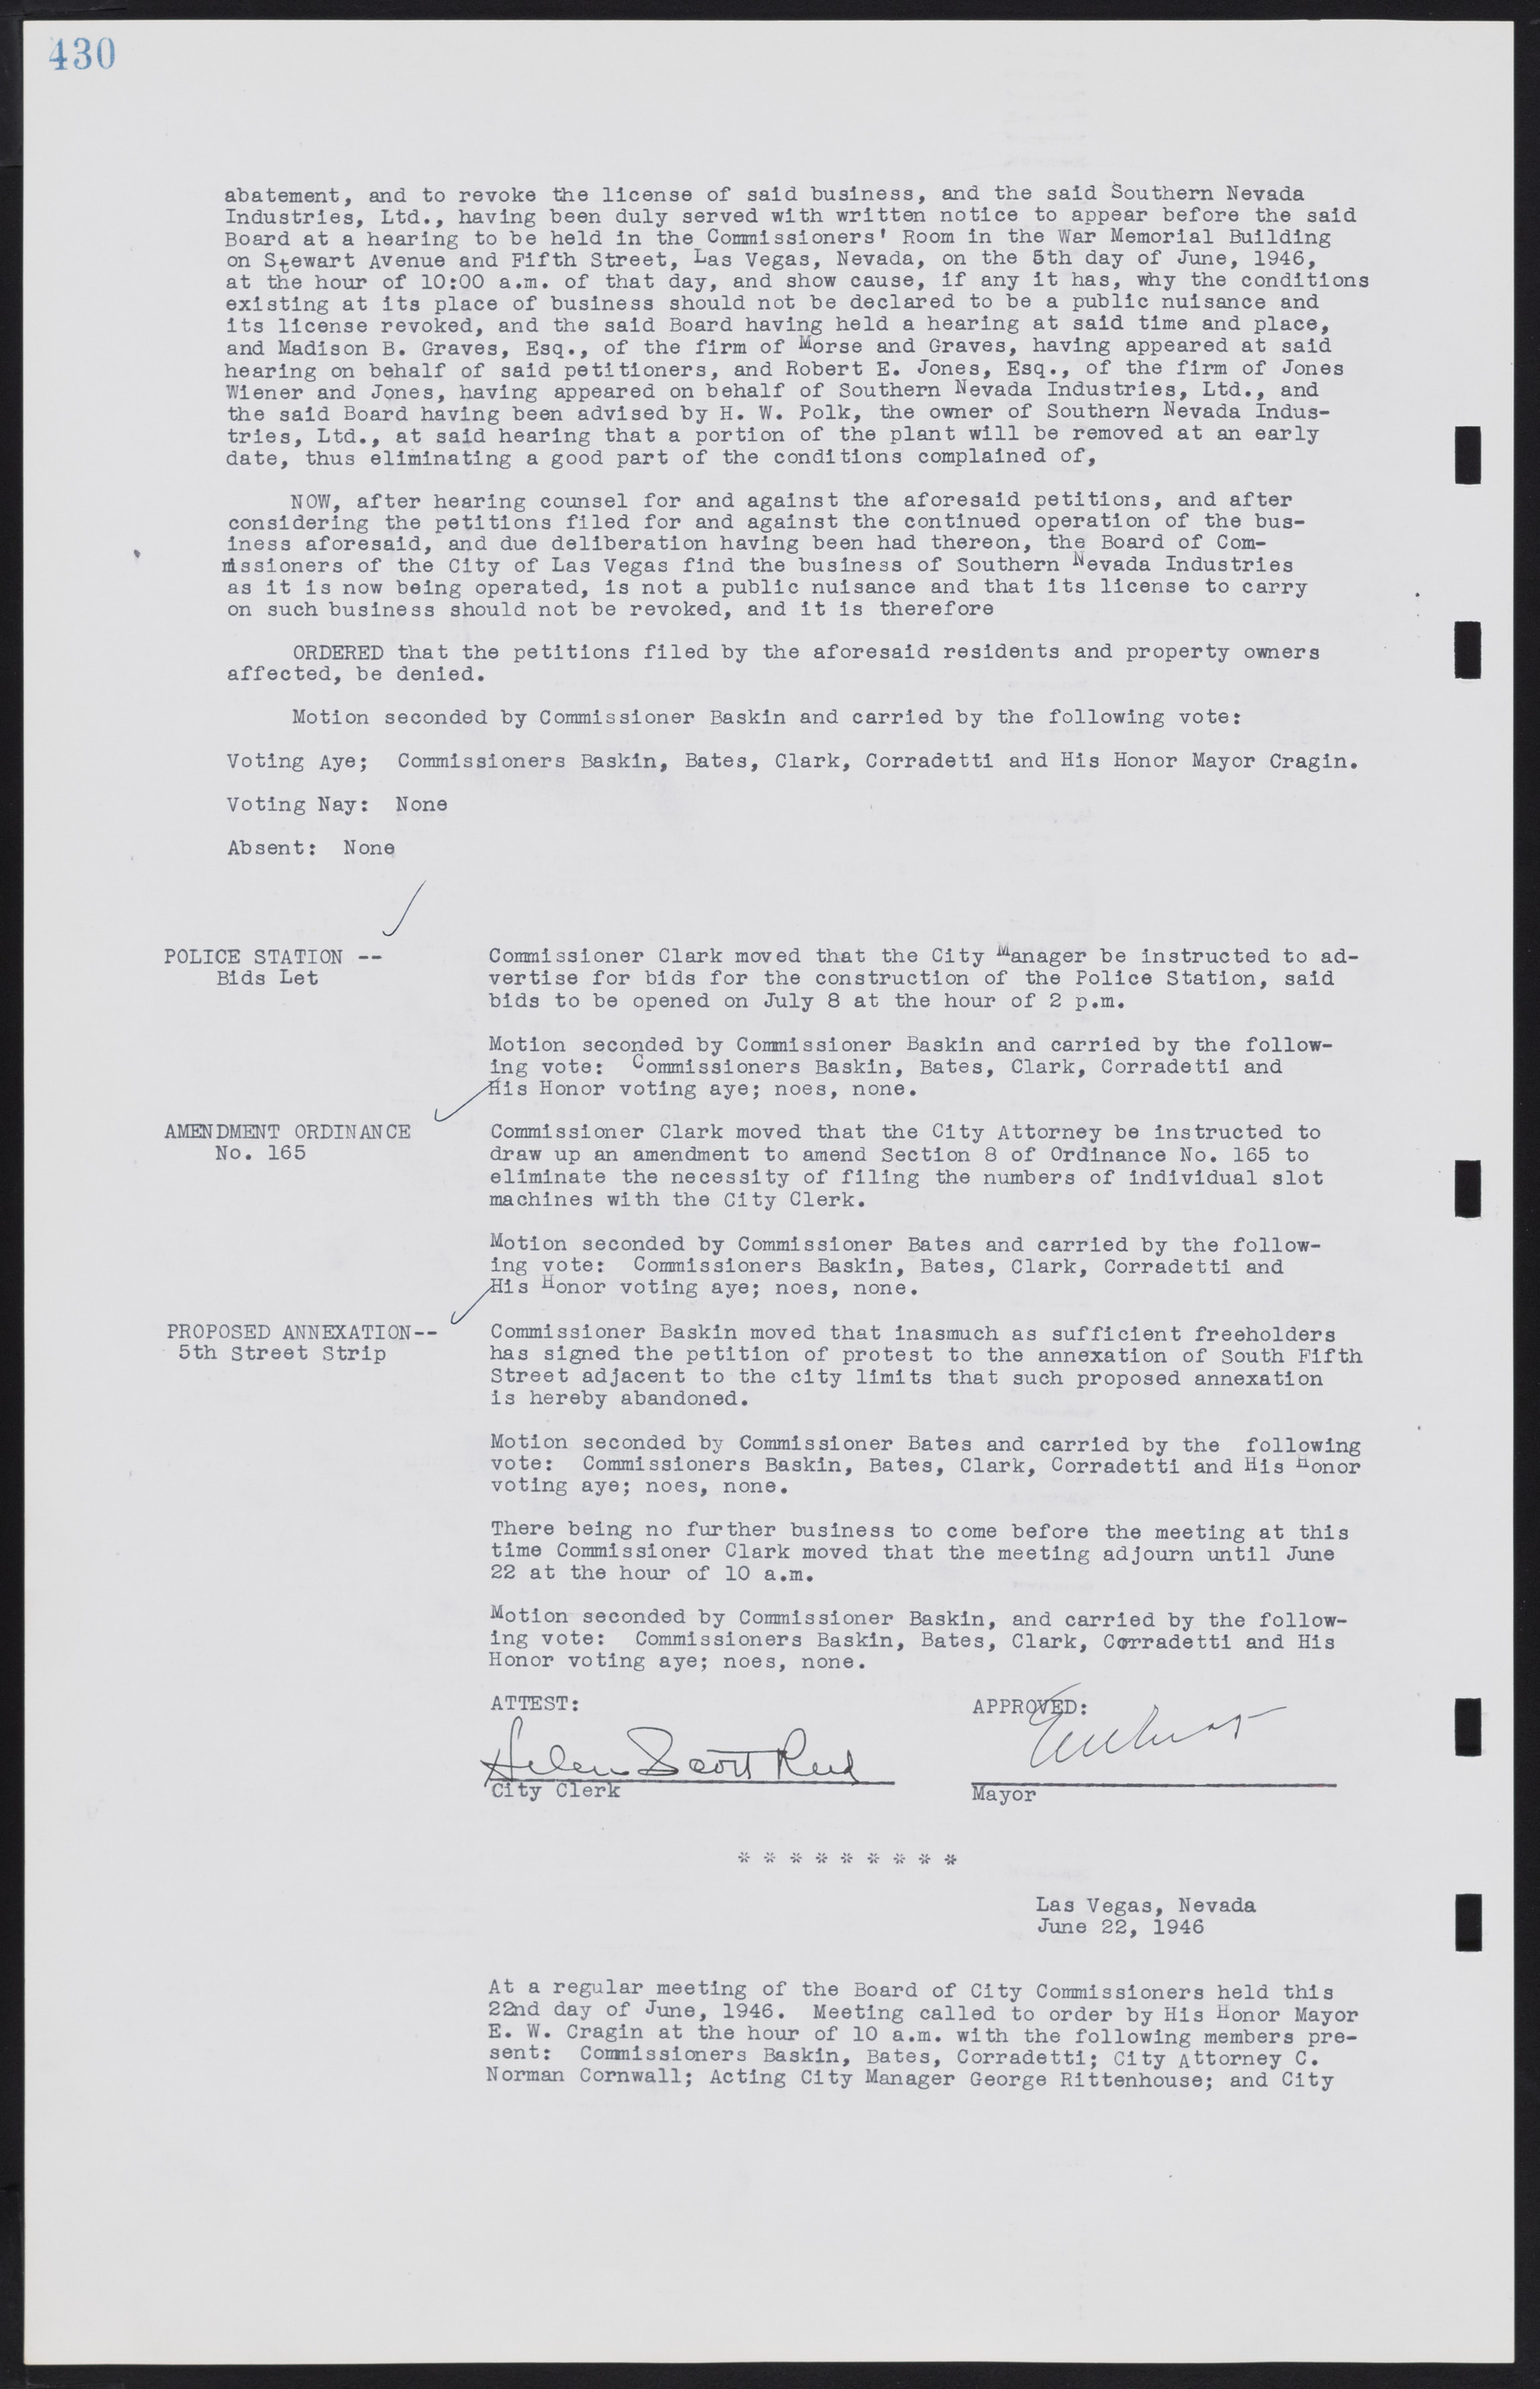 Las Vegas City Commission Minutes, August 11, 1942 to December 30, 1946, lvc000005-458